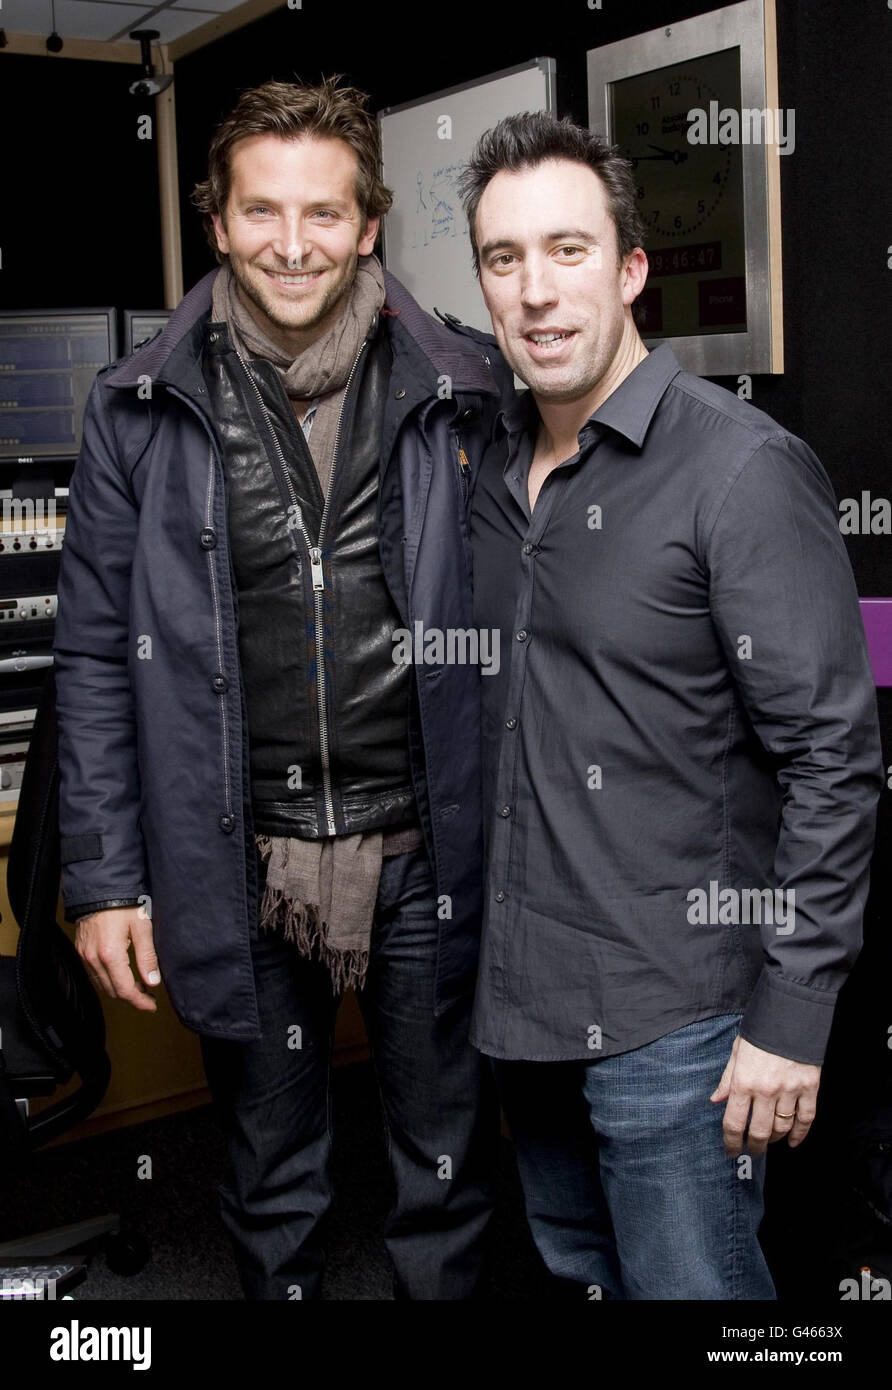 Bradley Cooper con Absolute radio, presentatore della prima colazione Christian o'Connell, presso Absolute radio nel centro di Londra. Foto Stock